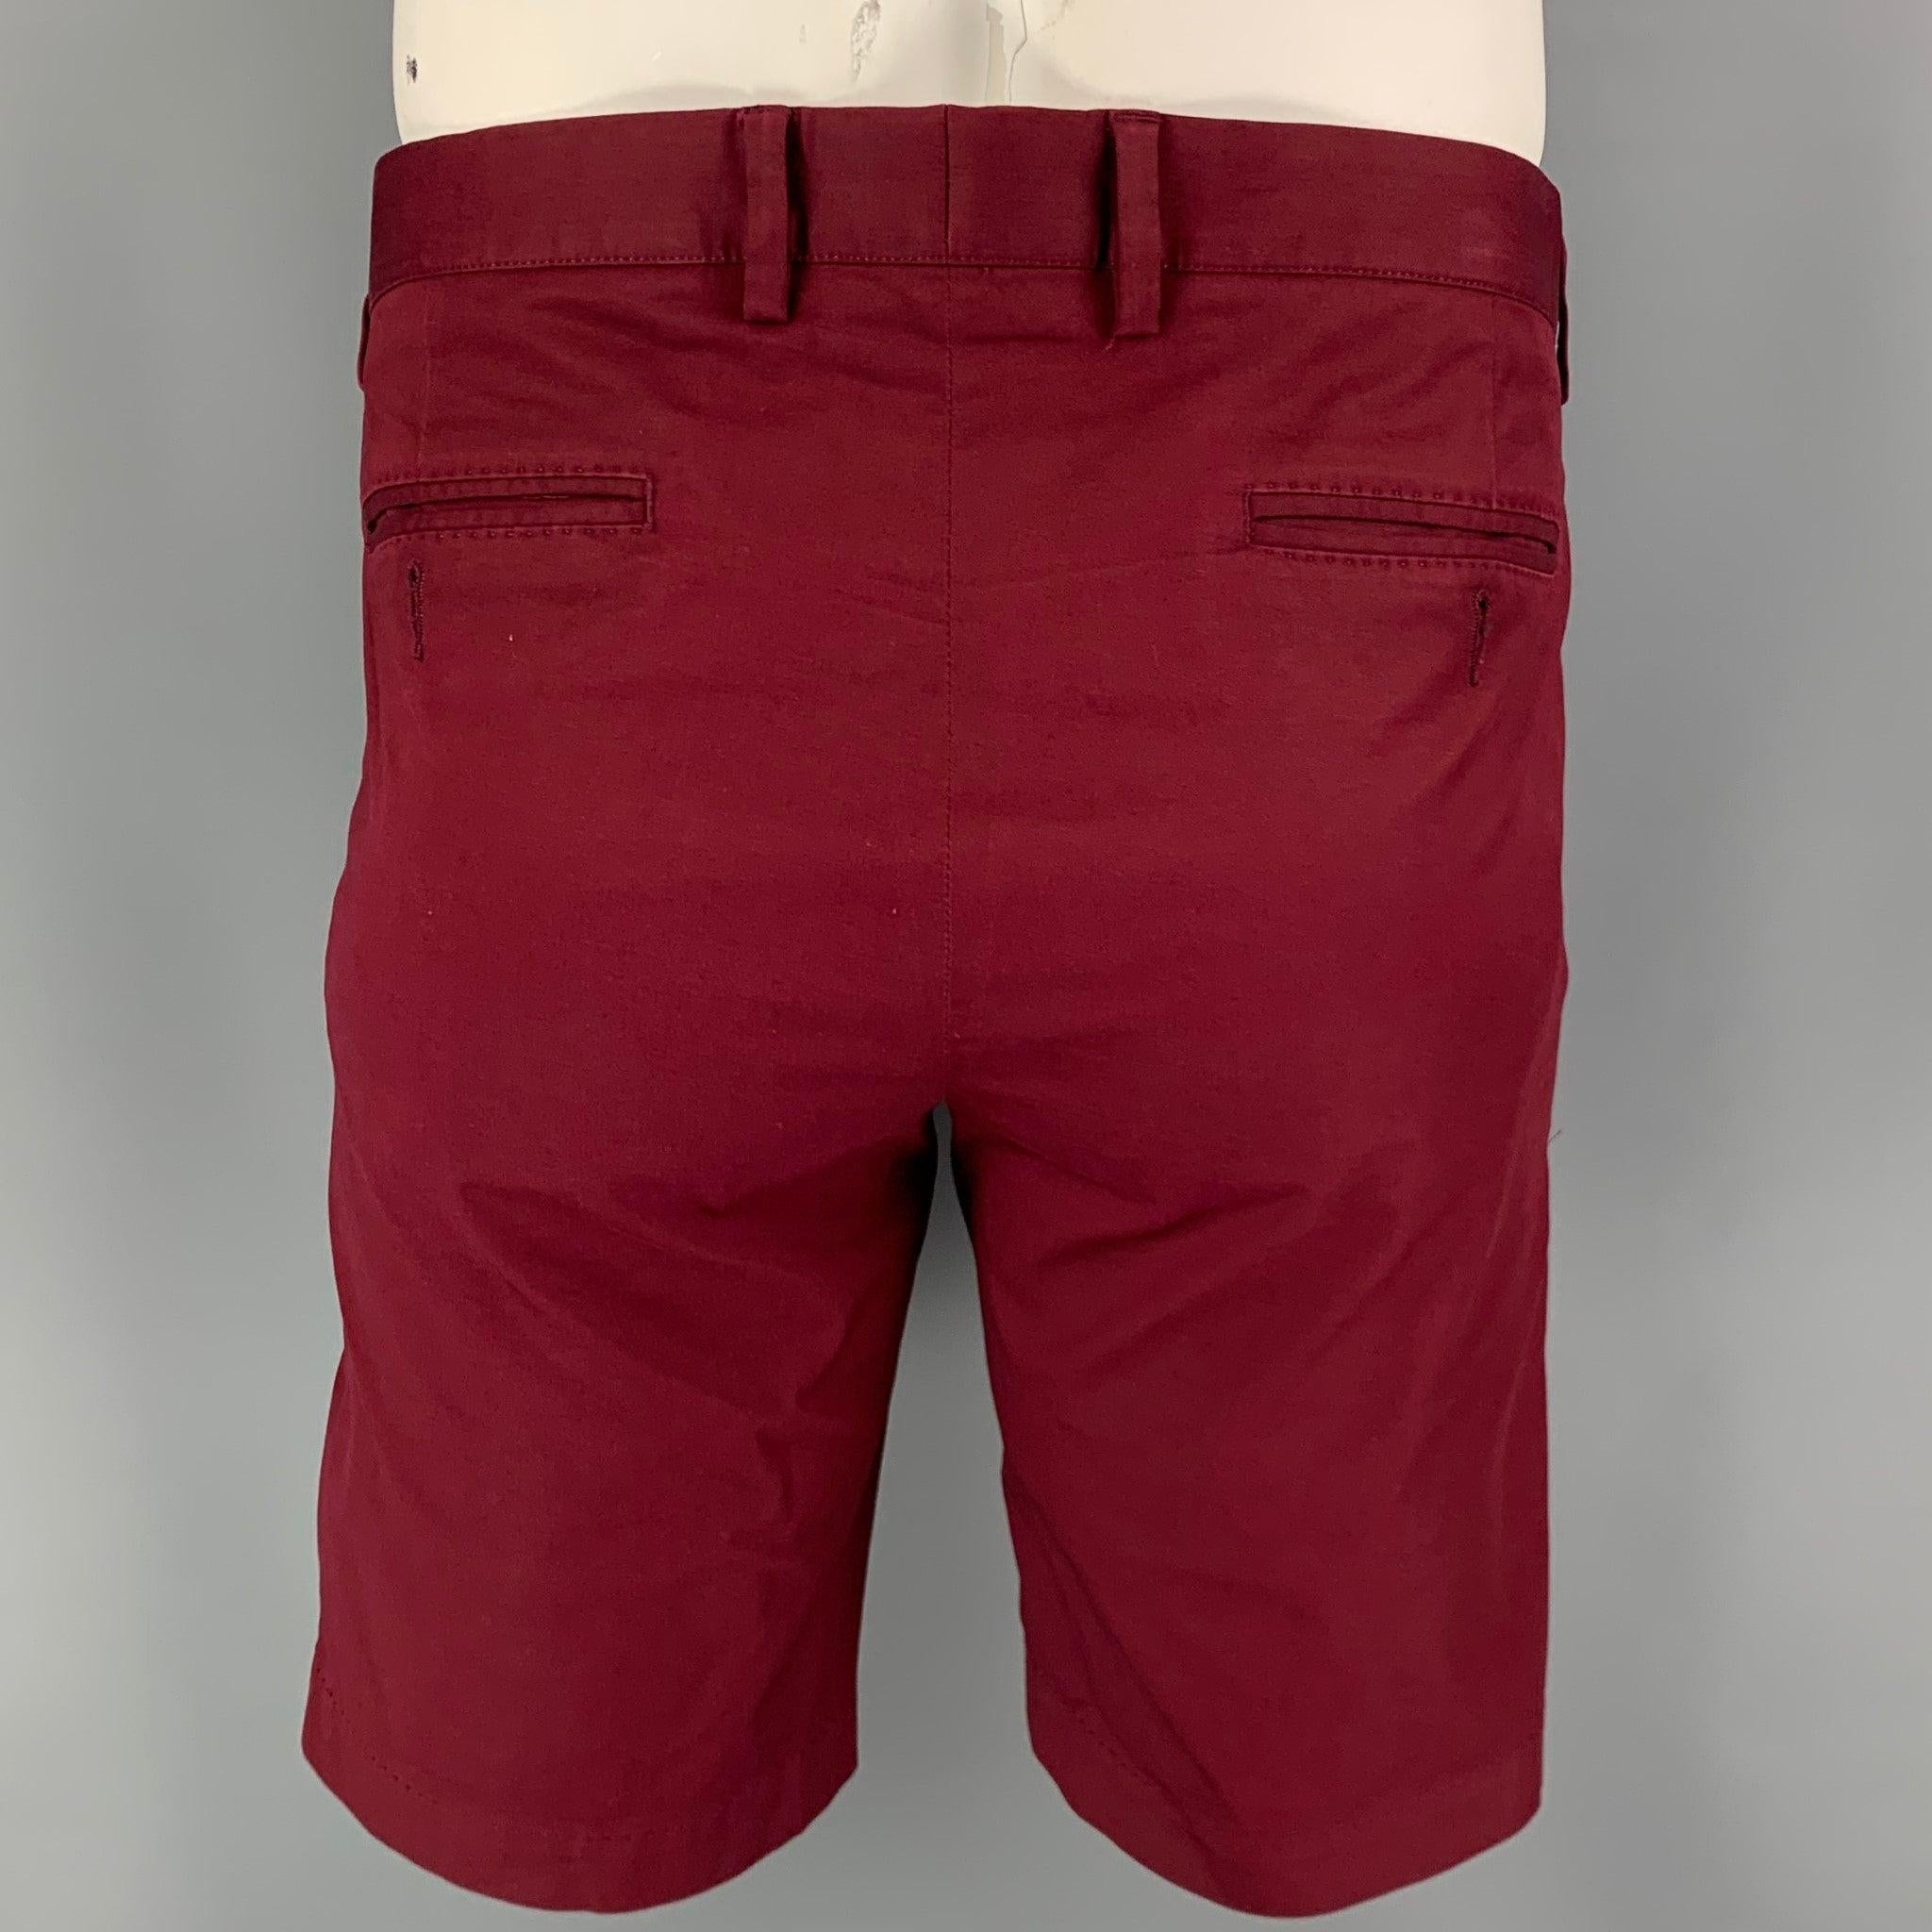 DOLCE & GABBANA Shorts aus burgunderfarbener Baumwolle mit Chino-Stil und Reißverschluss. Hergestellt in Italien.
Ausgezeichnet
Gebrauchtes Zustand. 

Markiert:   52 

Abmessungen: 
  Taille: 36 Zoll Anstieg: 9 Zoll Innennaht: 10 Zoll Beinöffnung: